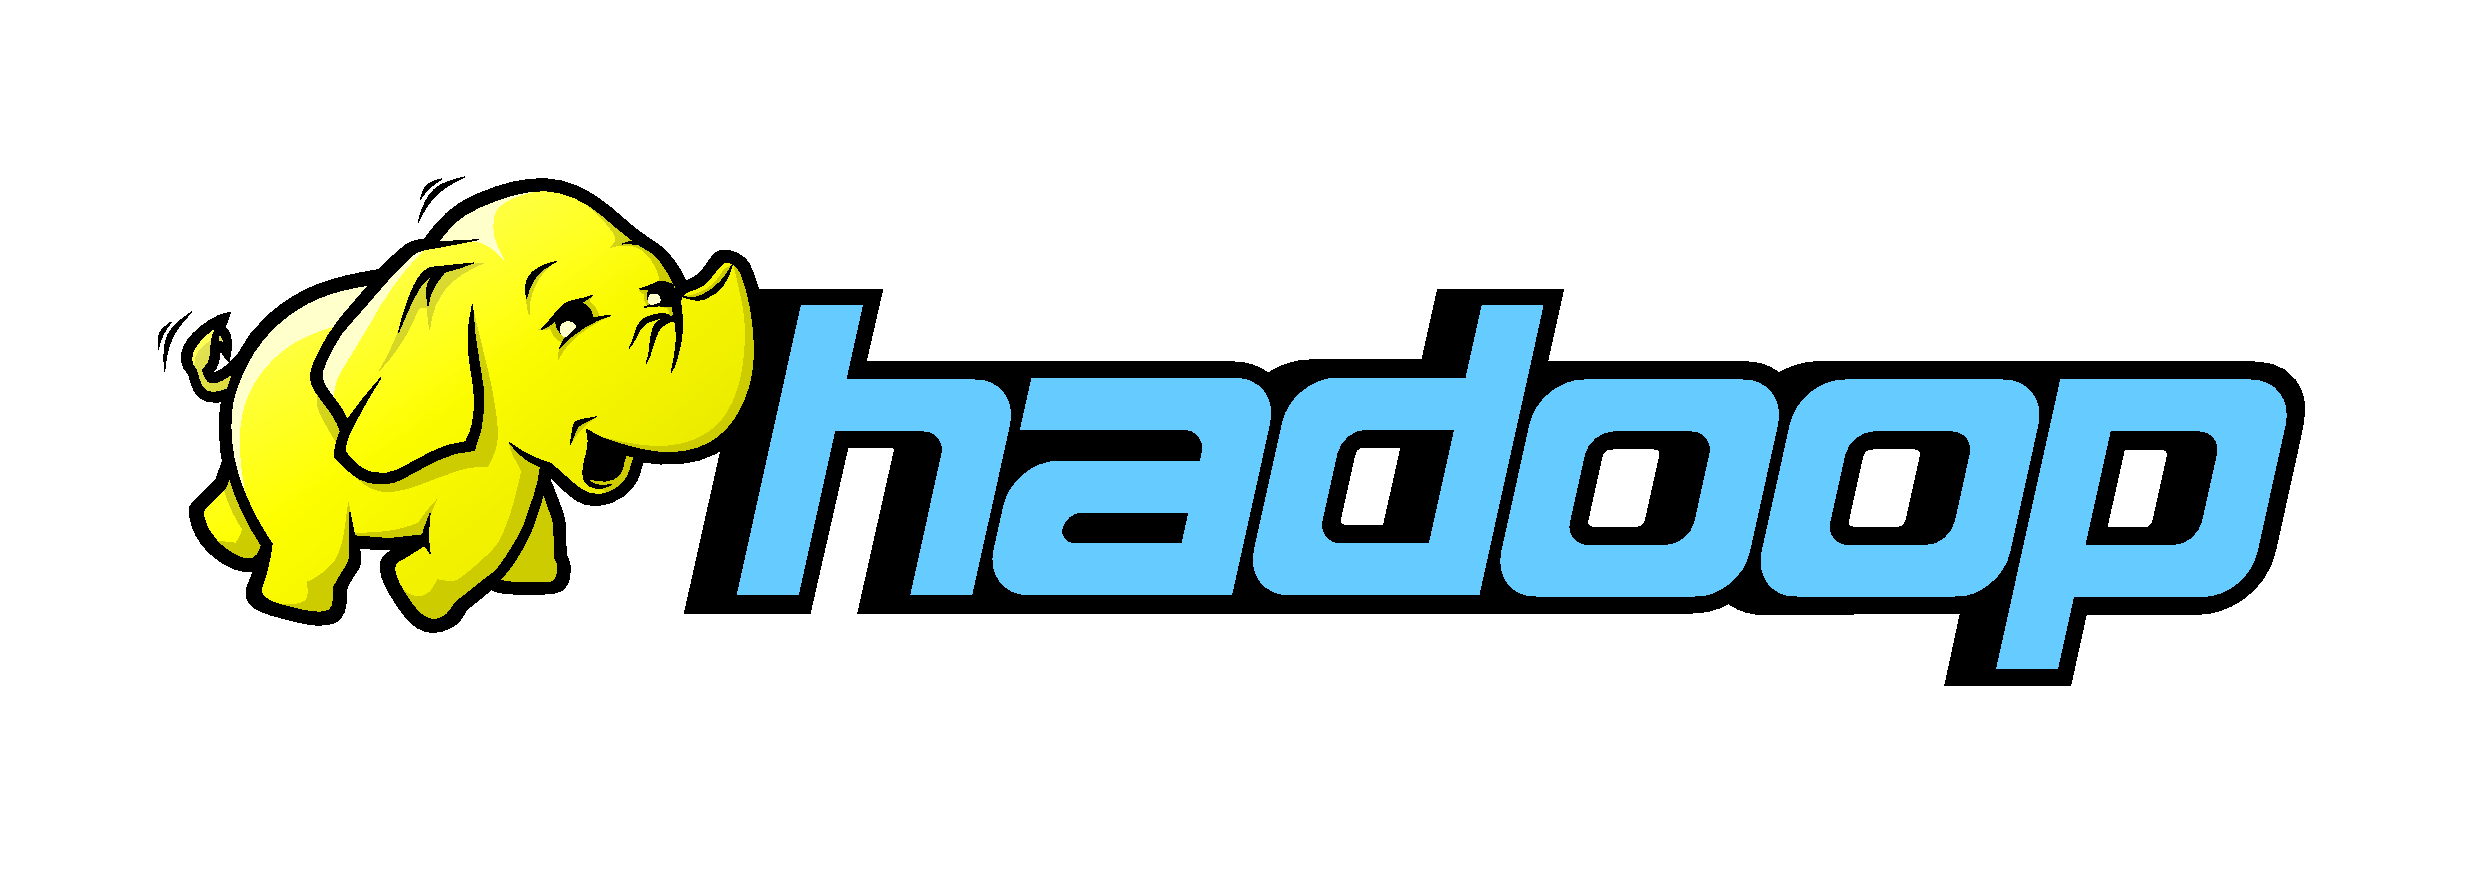 Hadoop - Big data de proyectos